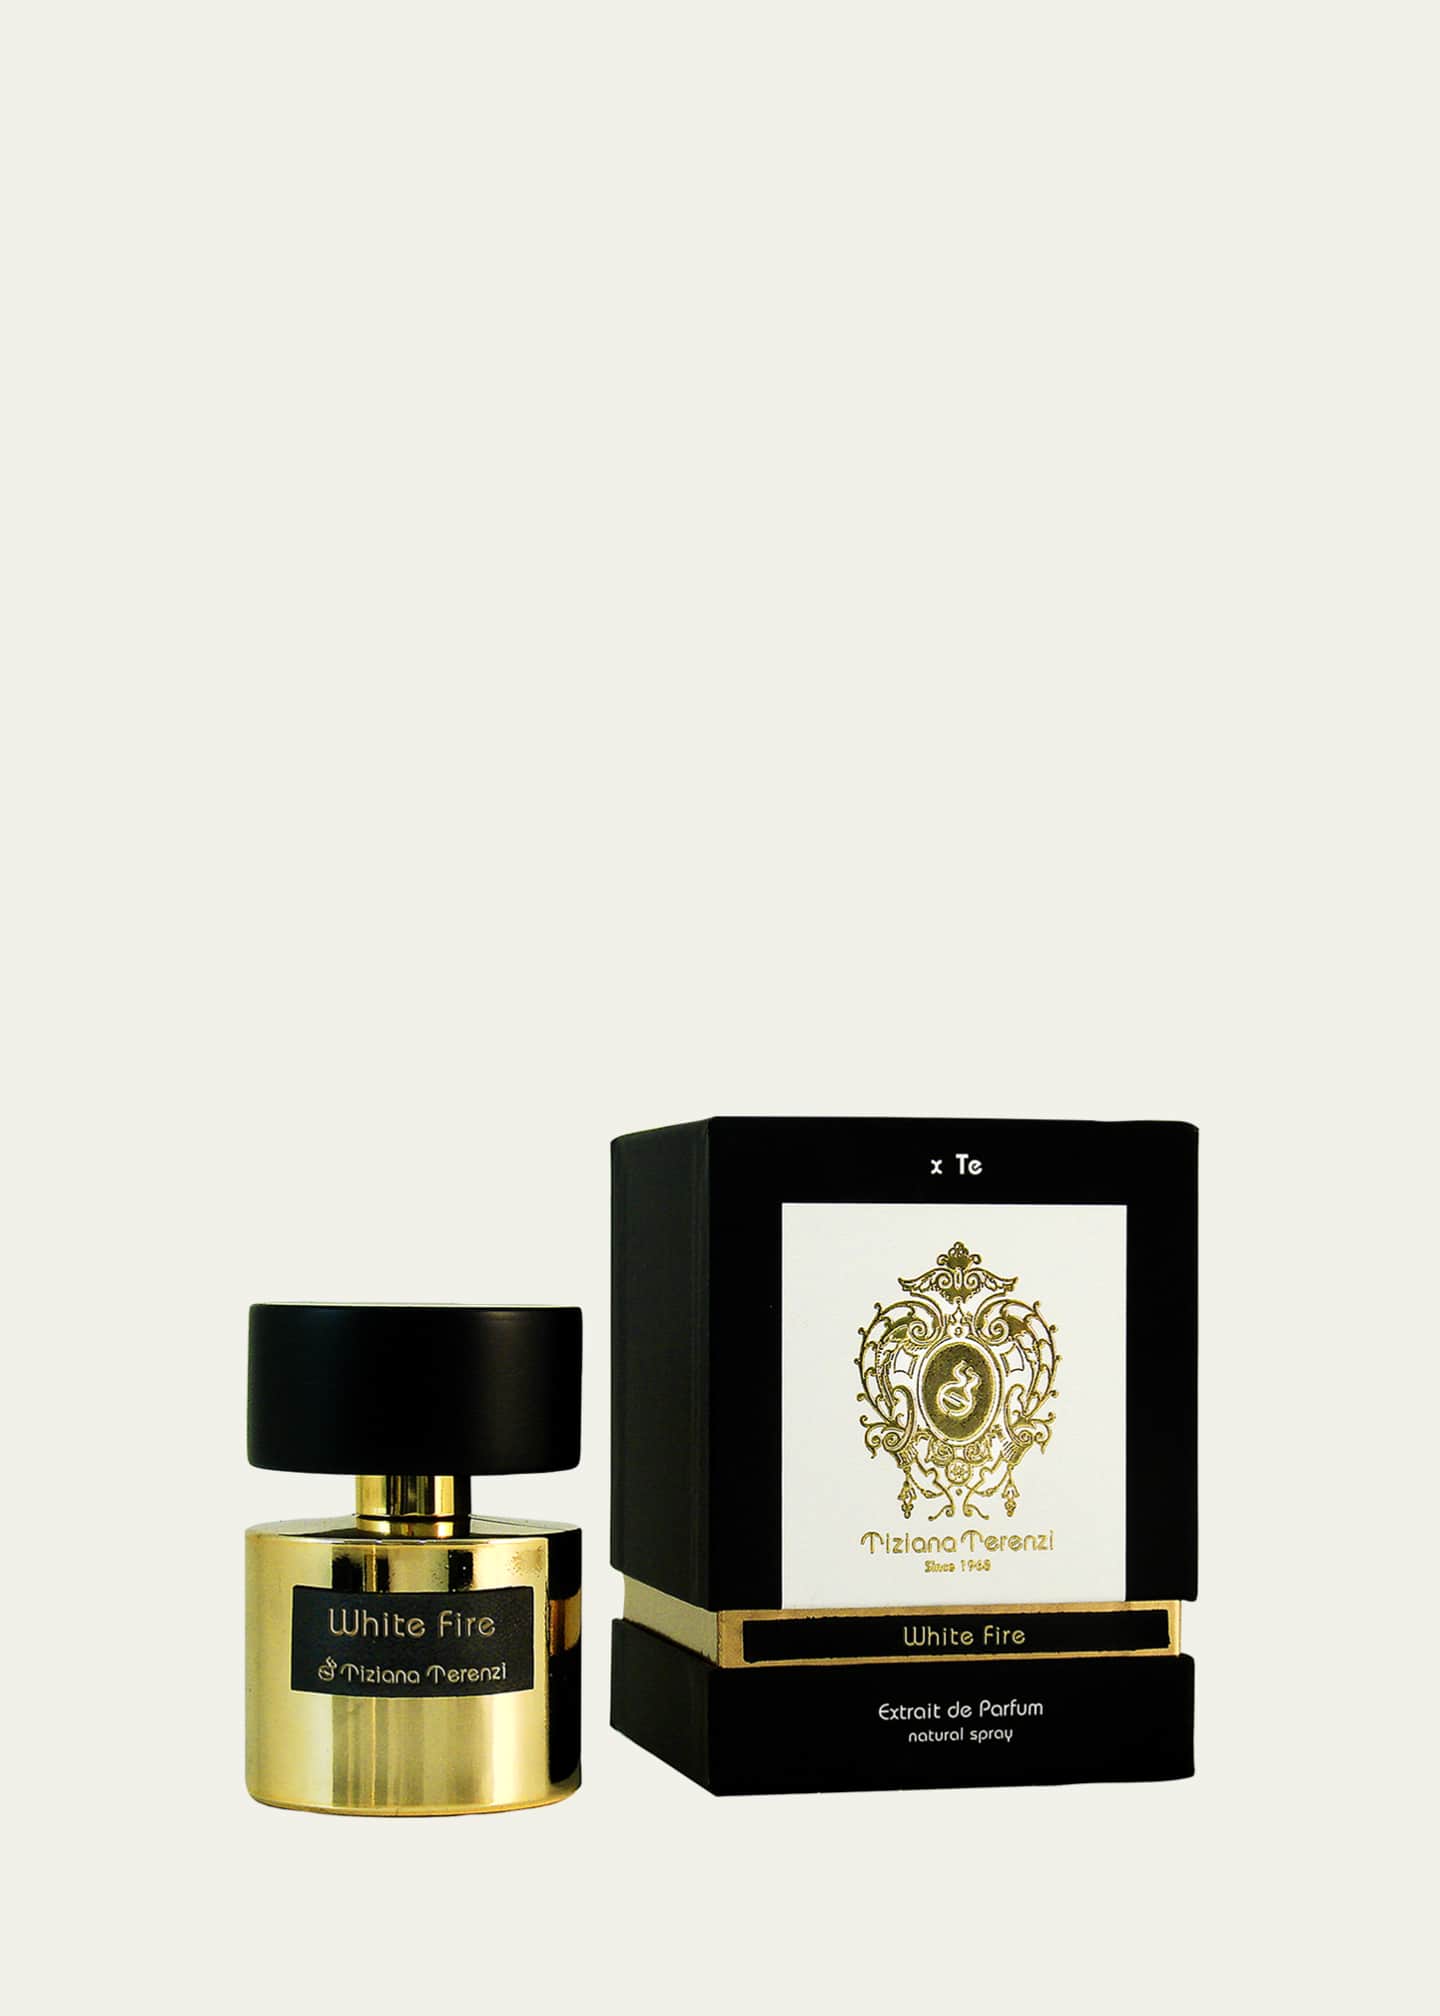 Tiziana Terenzi White Fire Extrait de Parfum, 3.4 oz. - Bergdorf Goodman